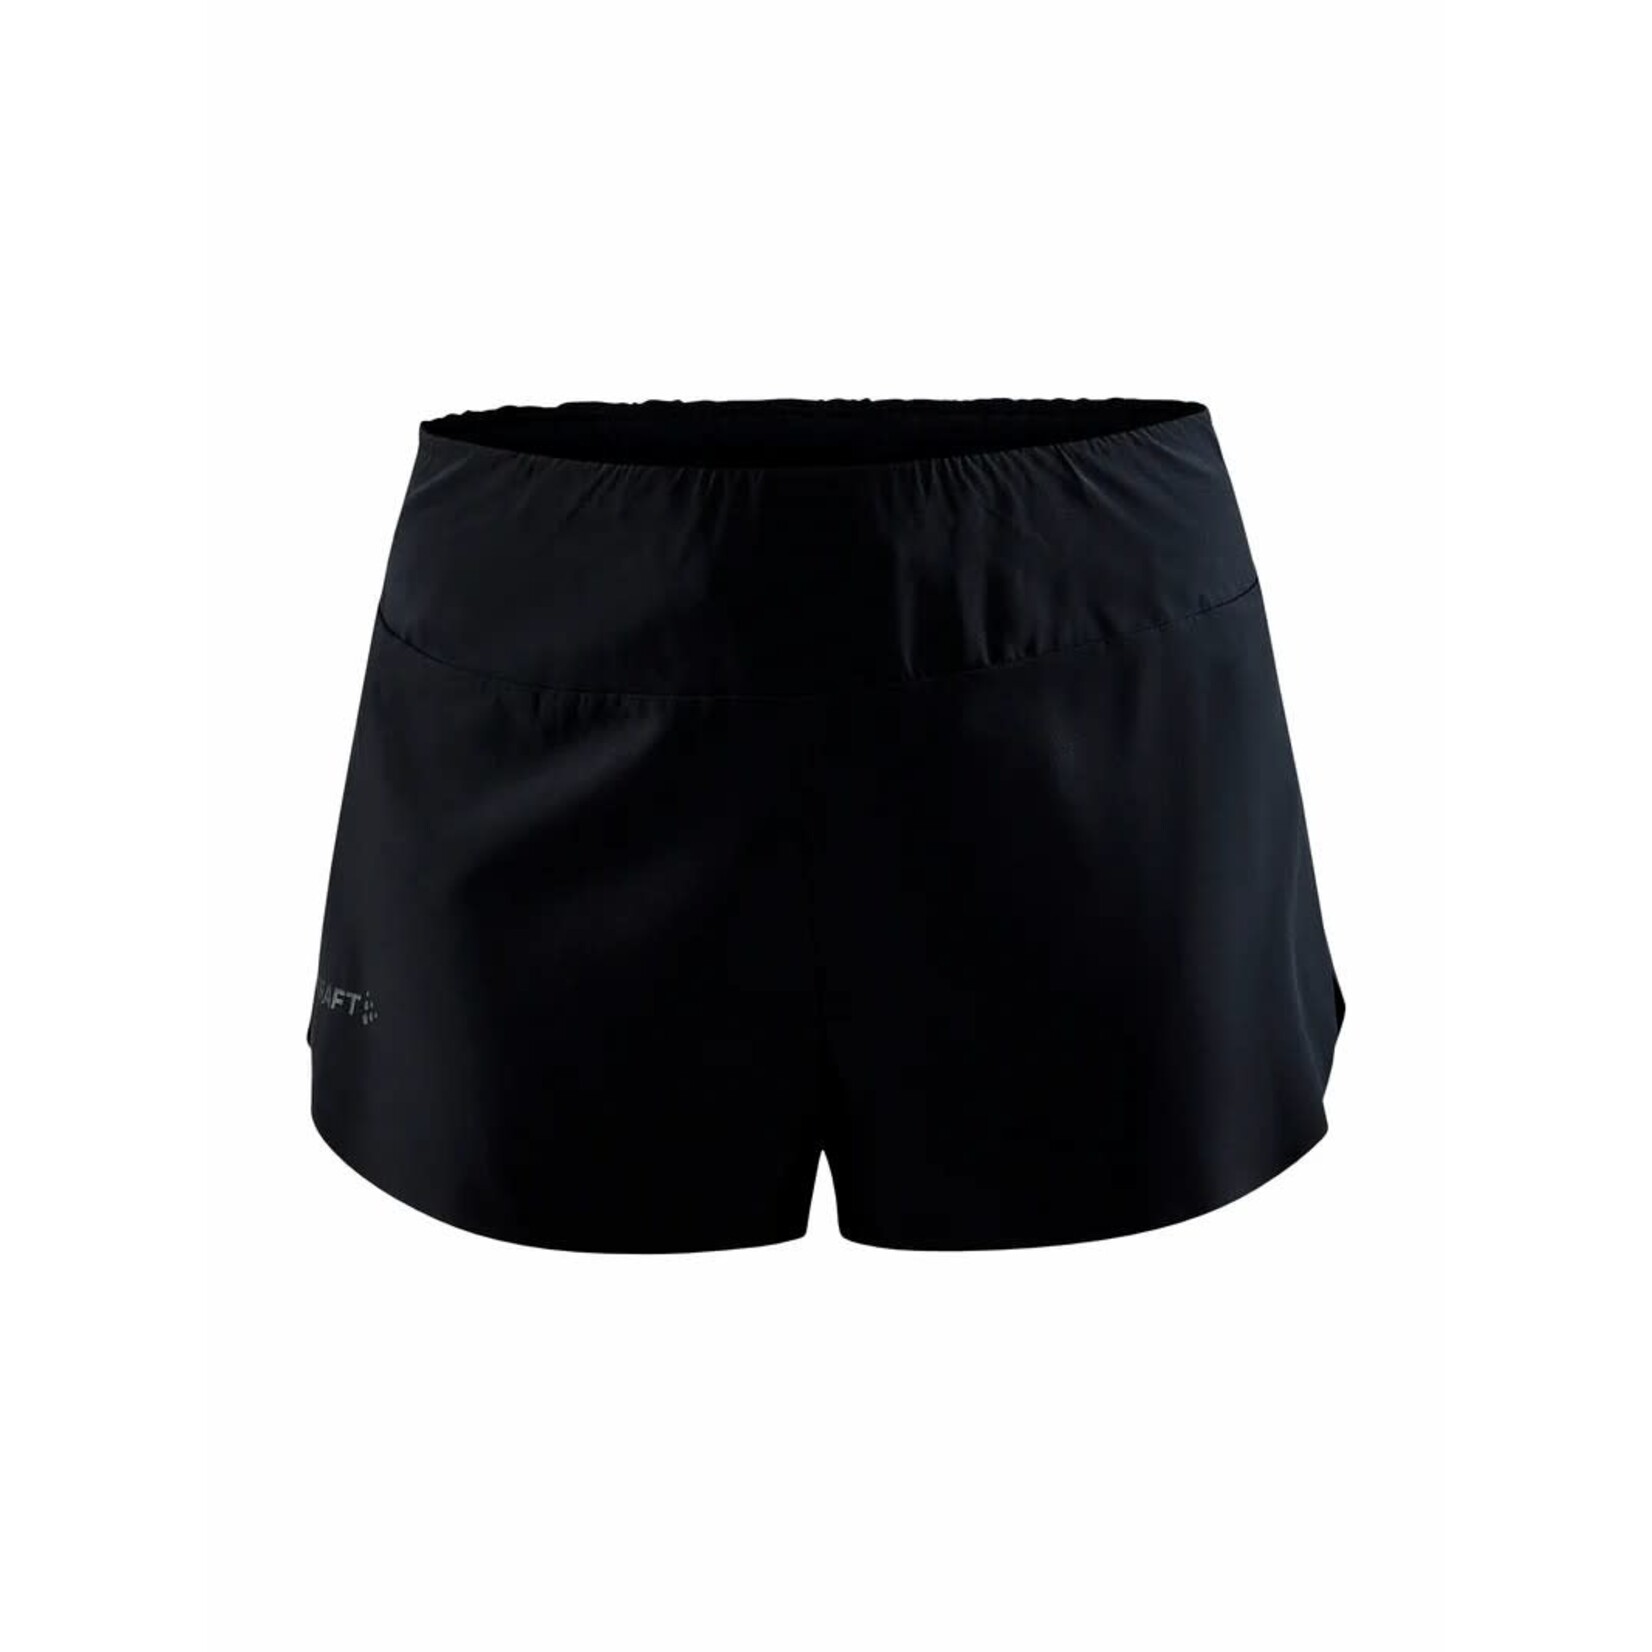 Craft Pro hypervent split shorts W ( short pour femme )